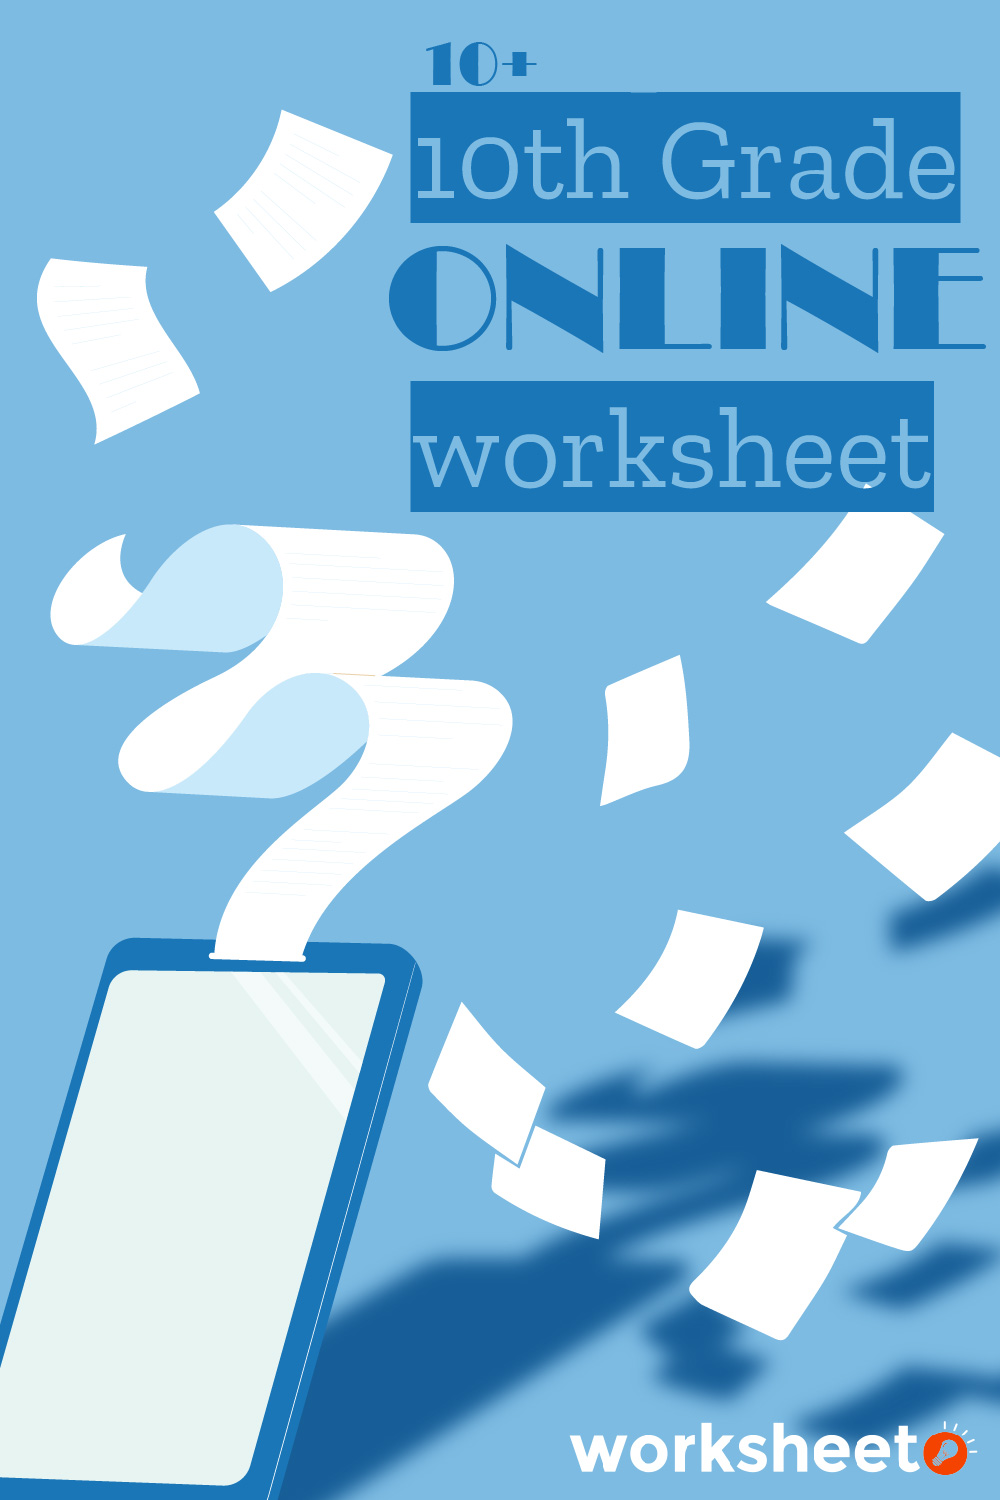 13 Images of 10th Grade Online Worksheets